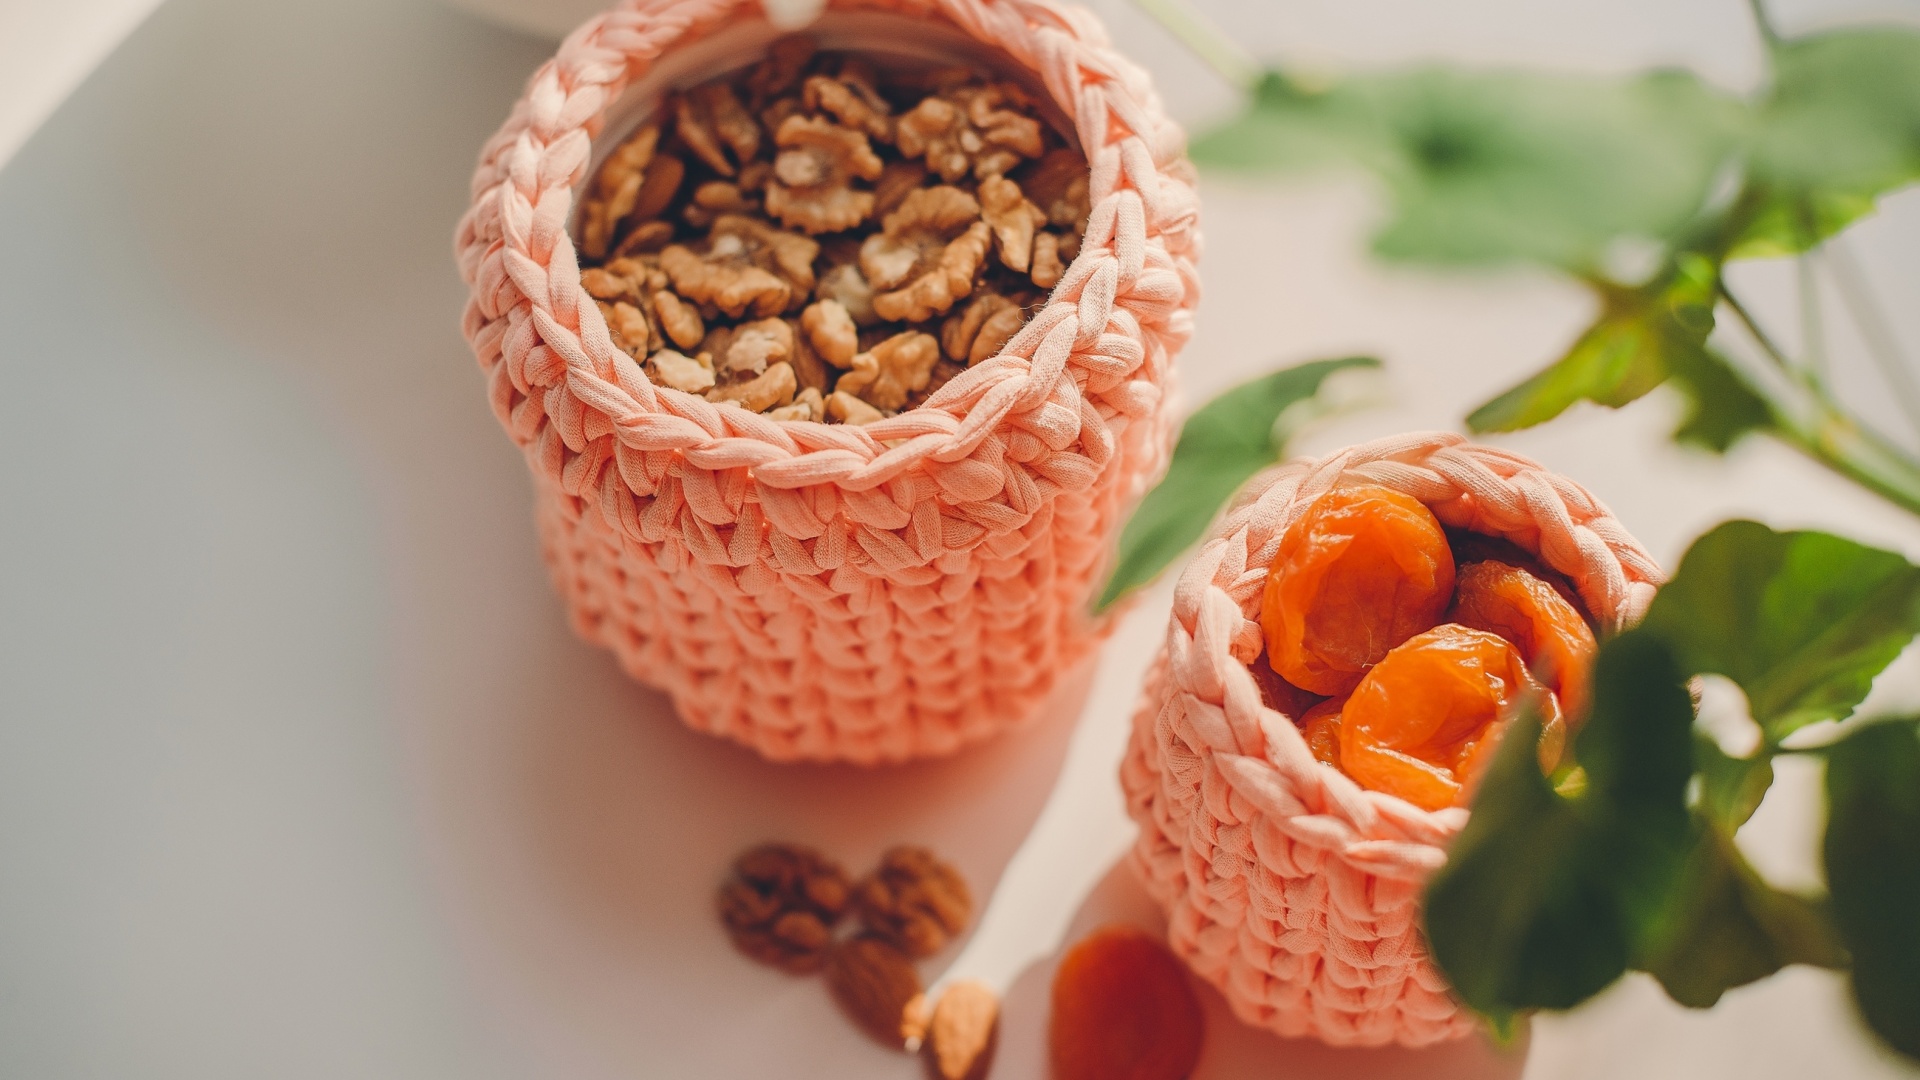 Sfondi Nuts and dried apricots 1920x1080